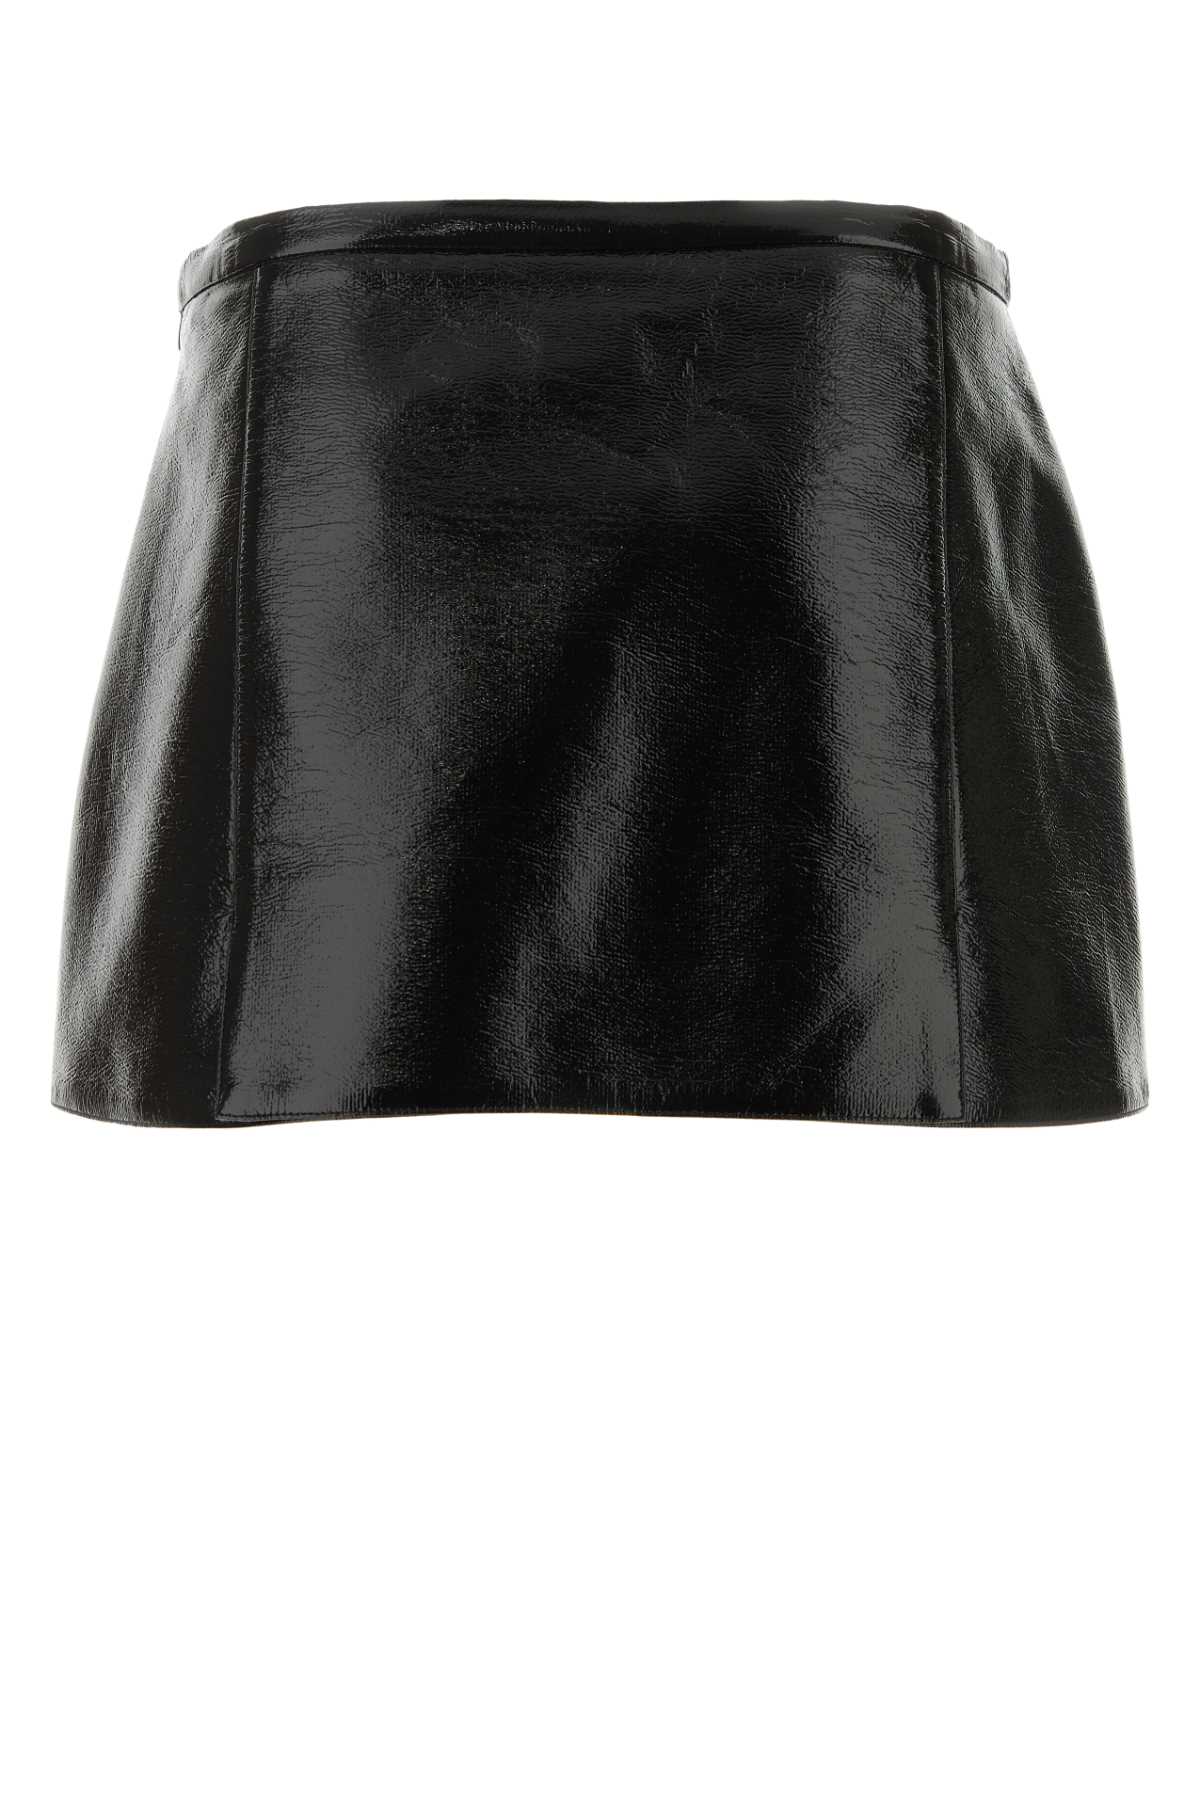 Courrèges Black Vinyl Mini Skirt